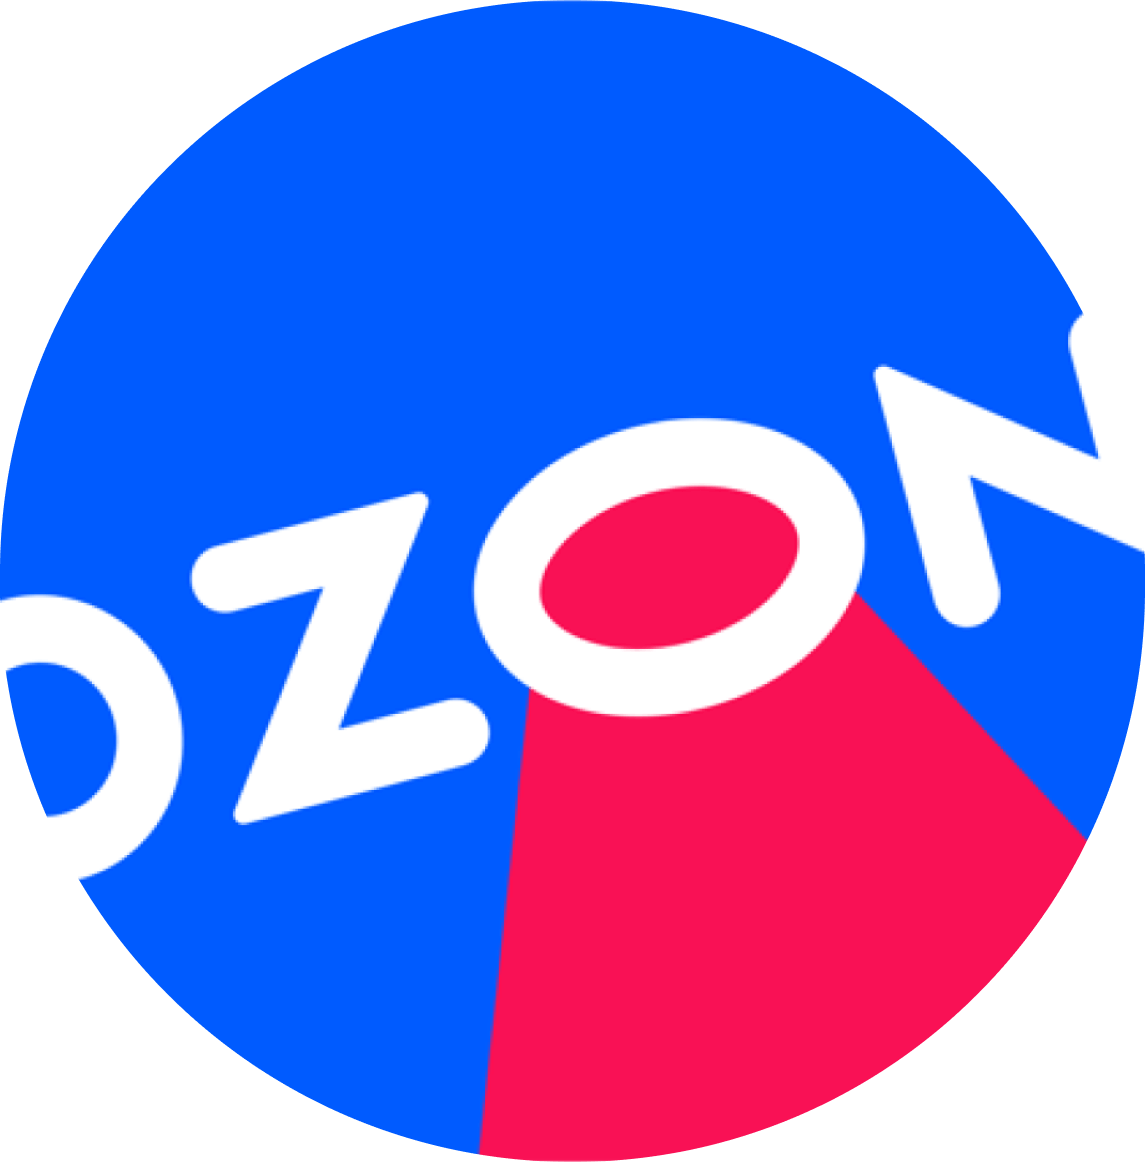 button-icon